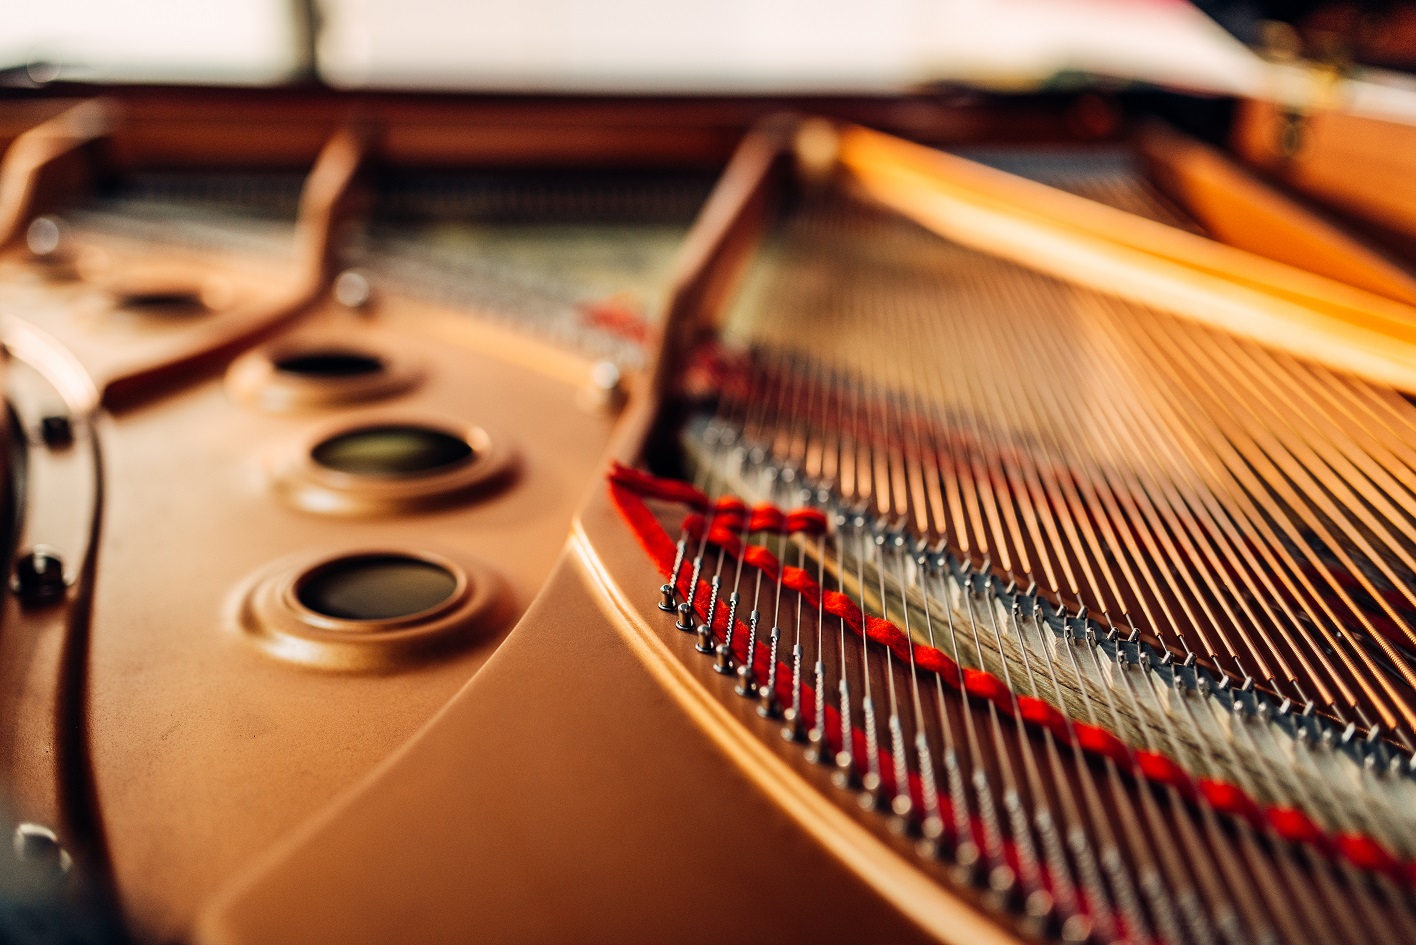 Corde à piano : ses spécificités décrites dans cet article.